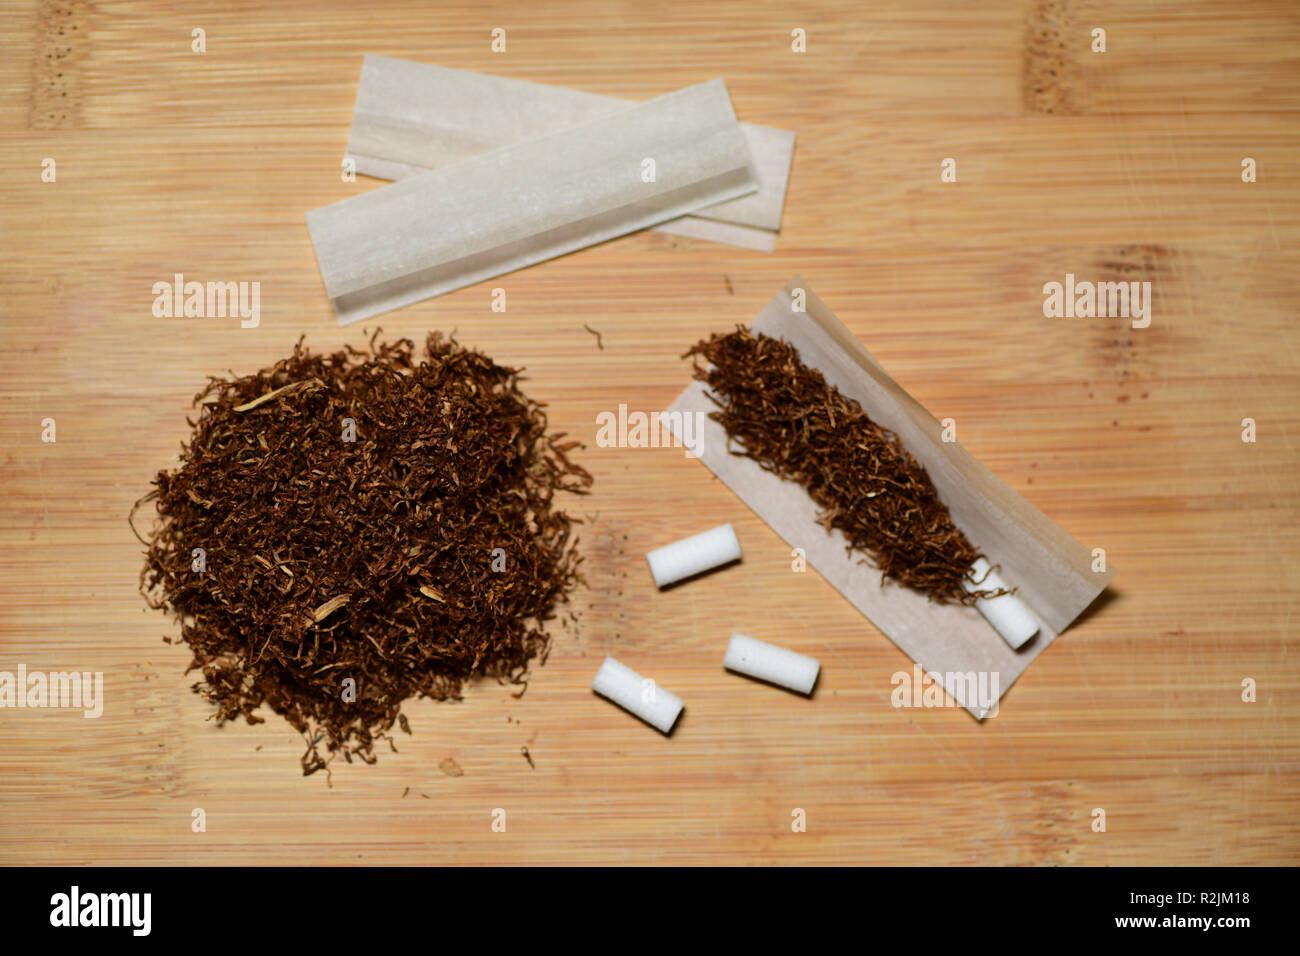 Mano el tabaco de liar, papel y filtros para hacer los cigarrillos